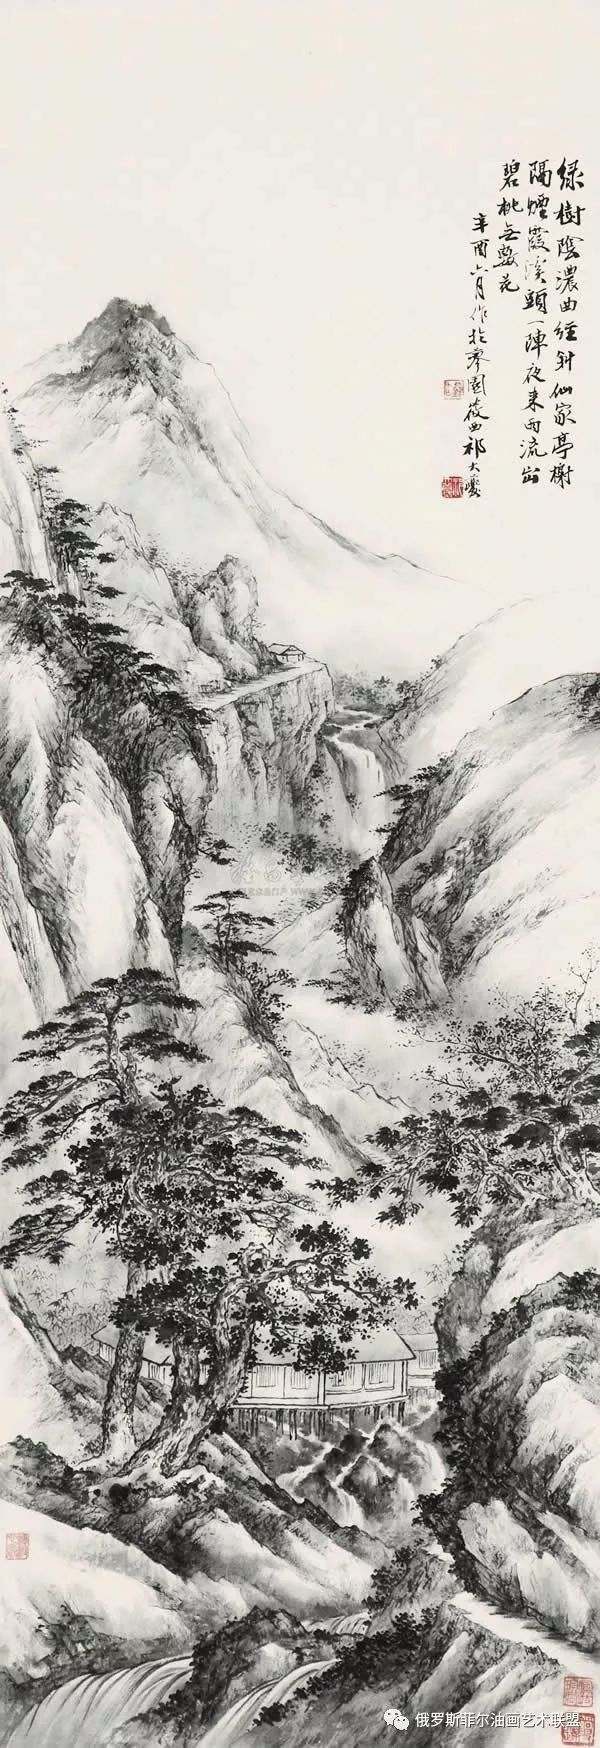 【国画精品】中国画家祁大夔的仿古山水作品欣赏